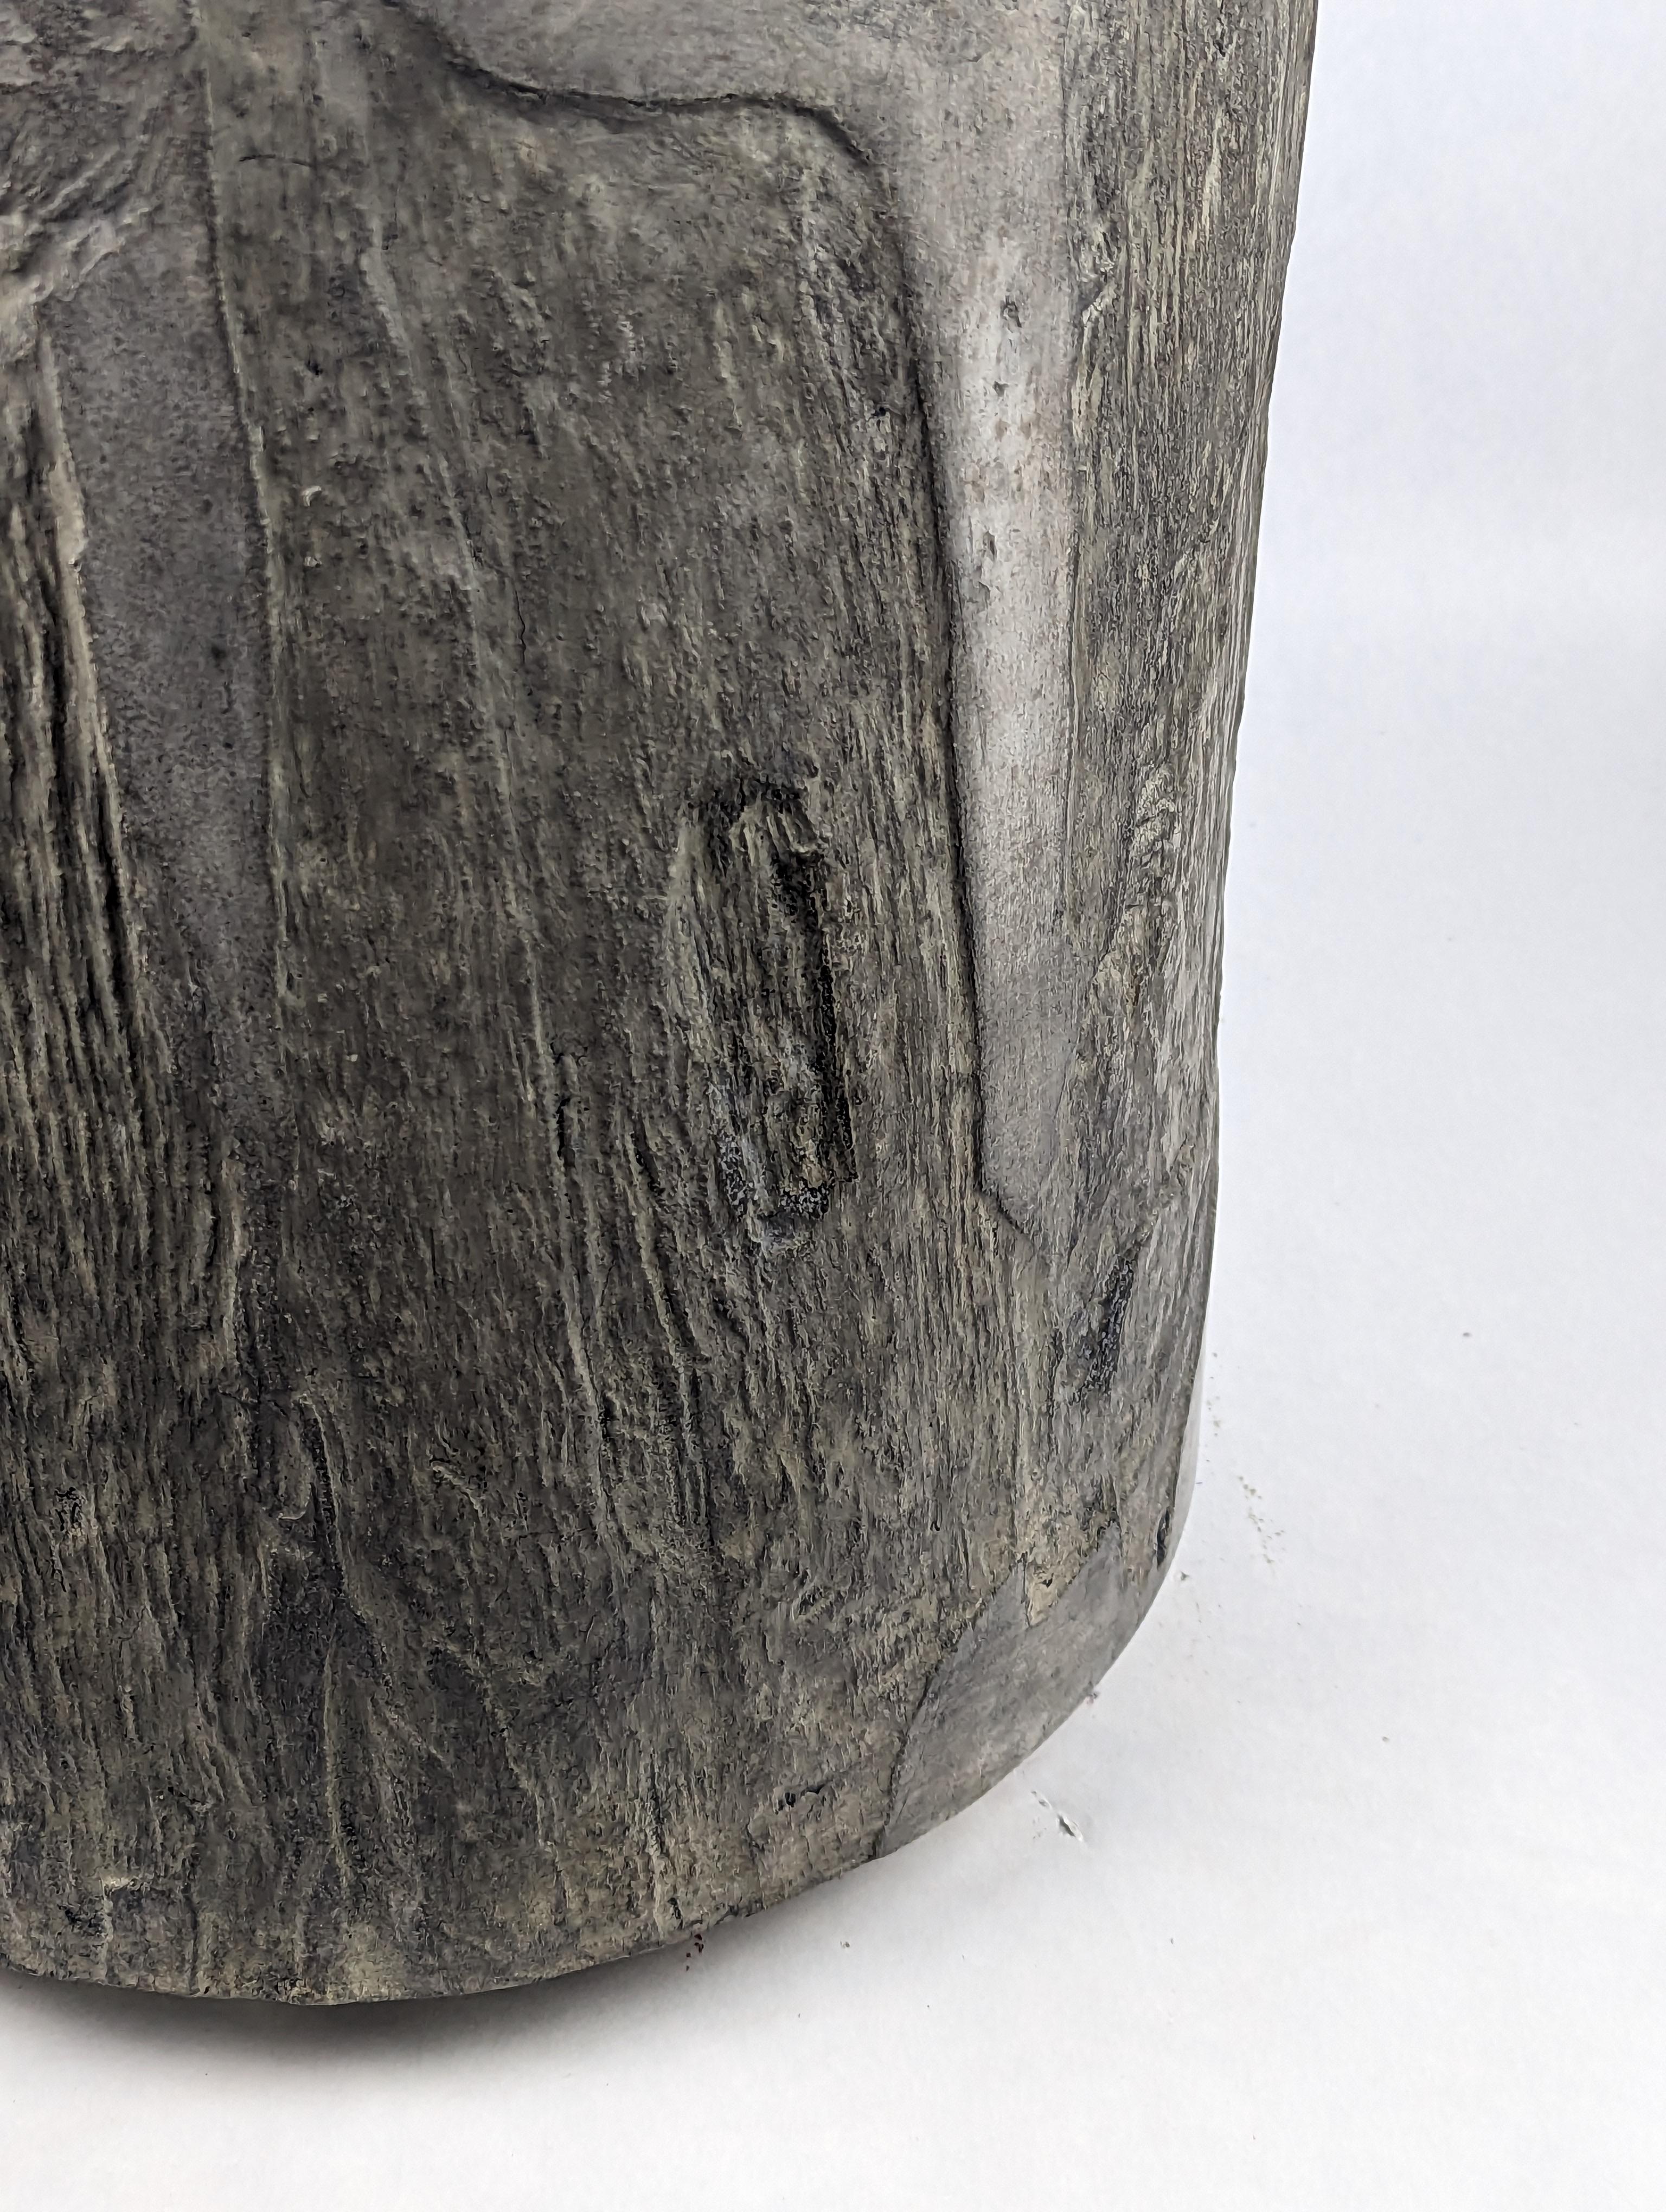 Contemporary Dark Grey Concrete Stool with Stone or Cliff-like Texture, 'Vertigo'